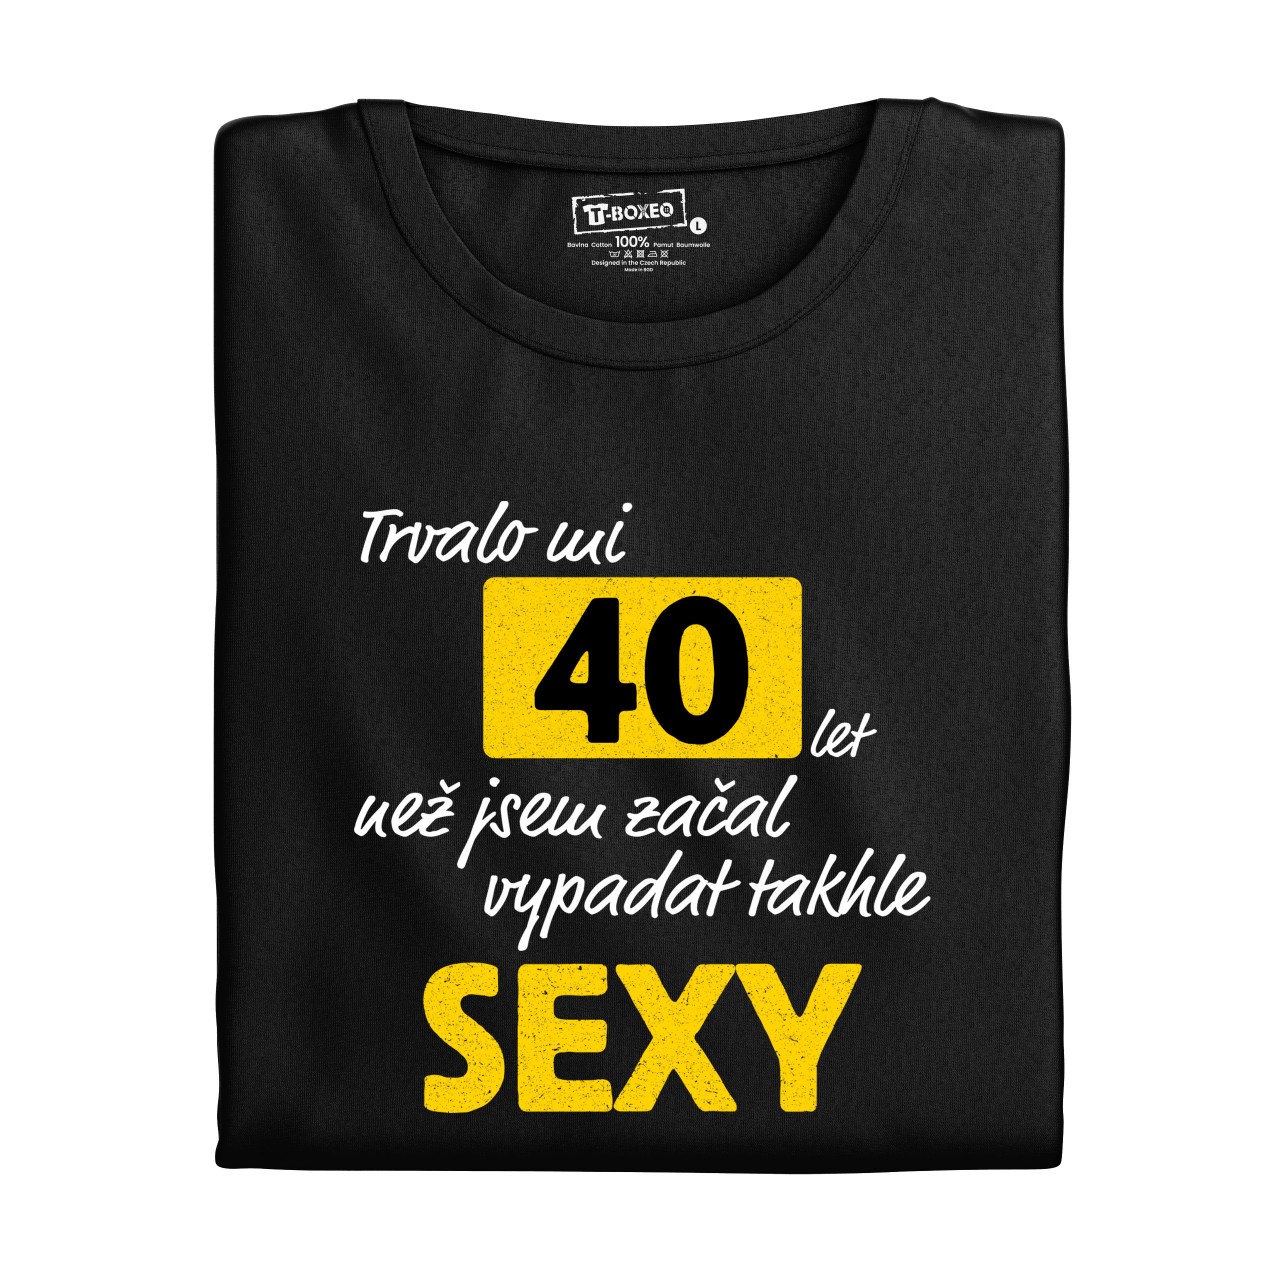 Pánské tričko s potiskem “Trvalo mi..sexy” s věkem